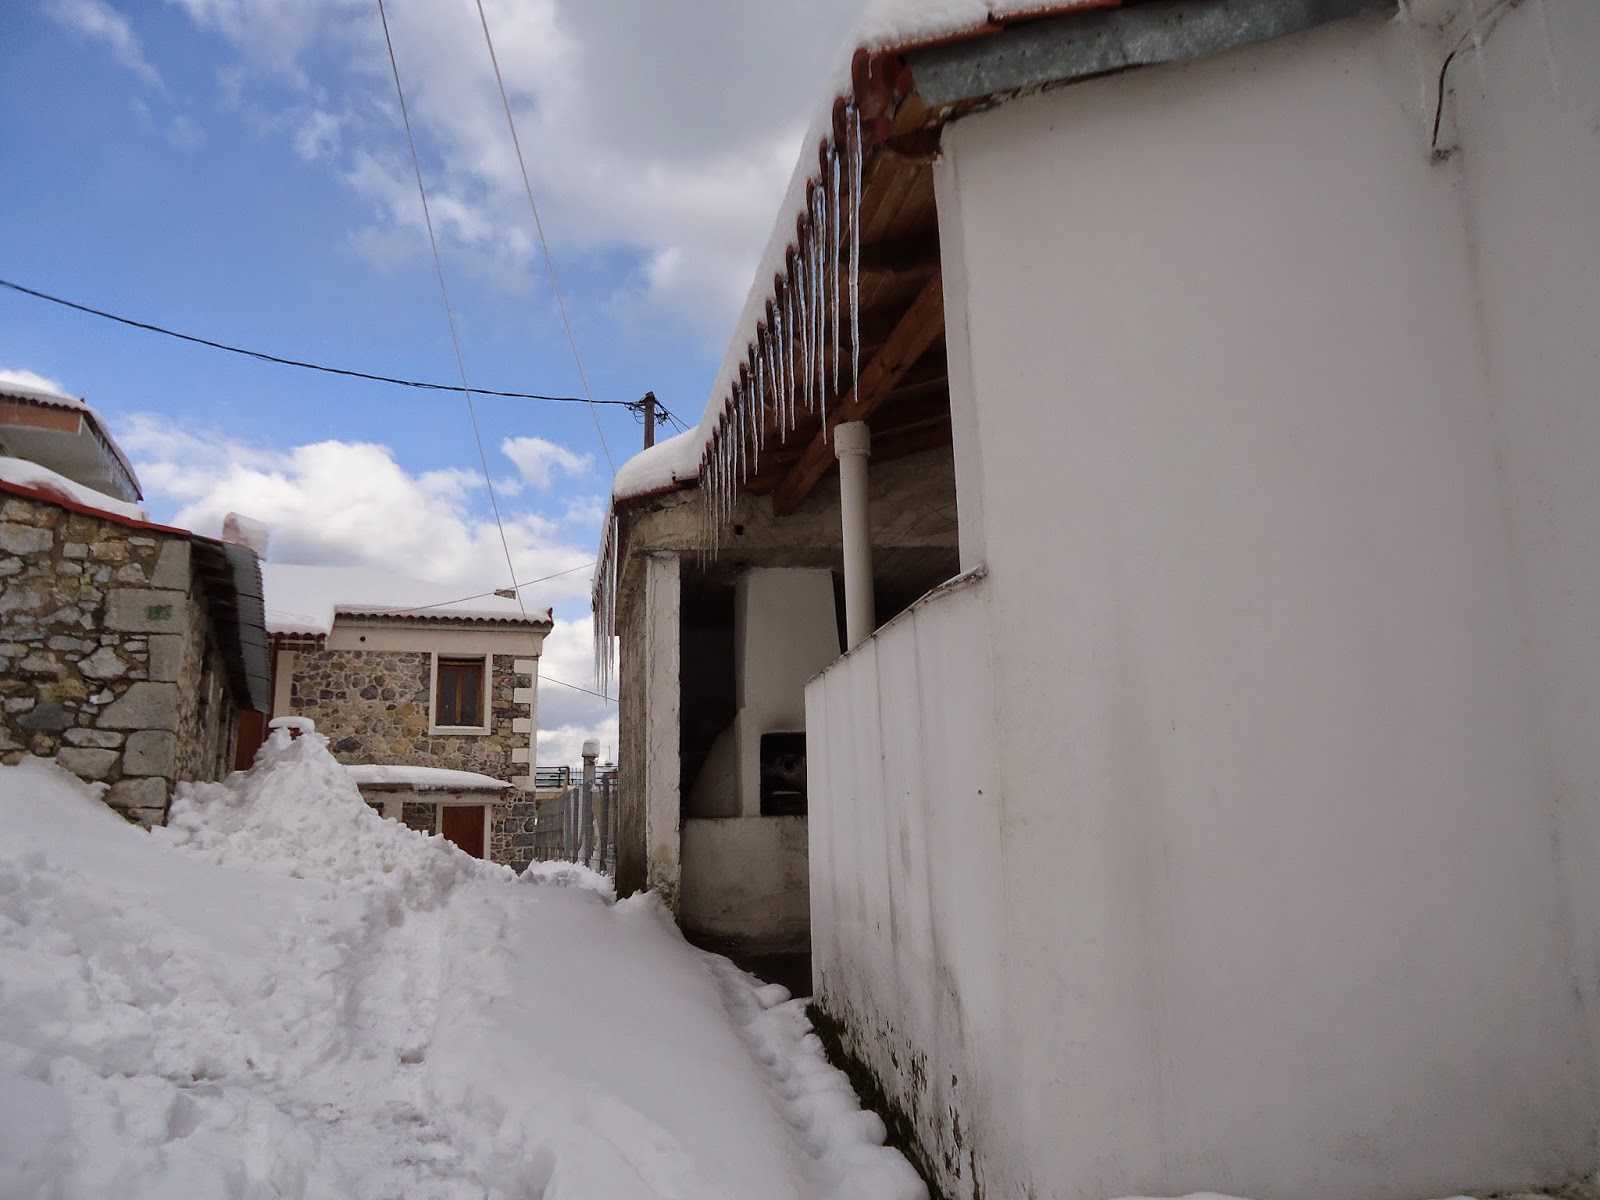 Τραγωδία στην Εύβοια: 72χρονος πέθανε αβοήθητος σε αποκλεισμένο χωριό από τα χιόνια